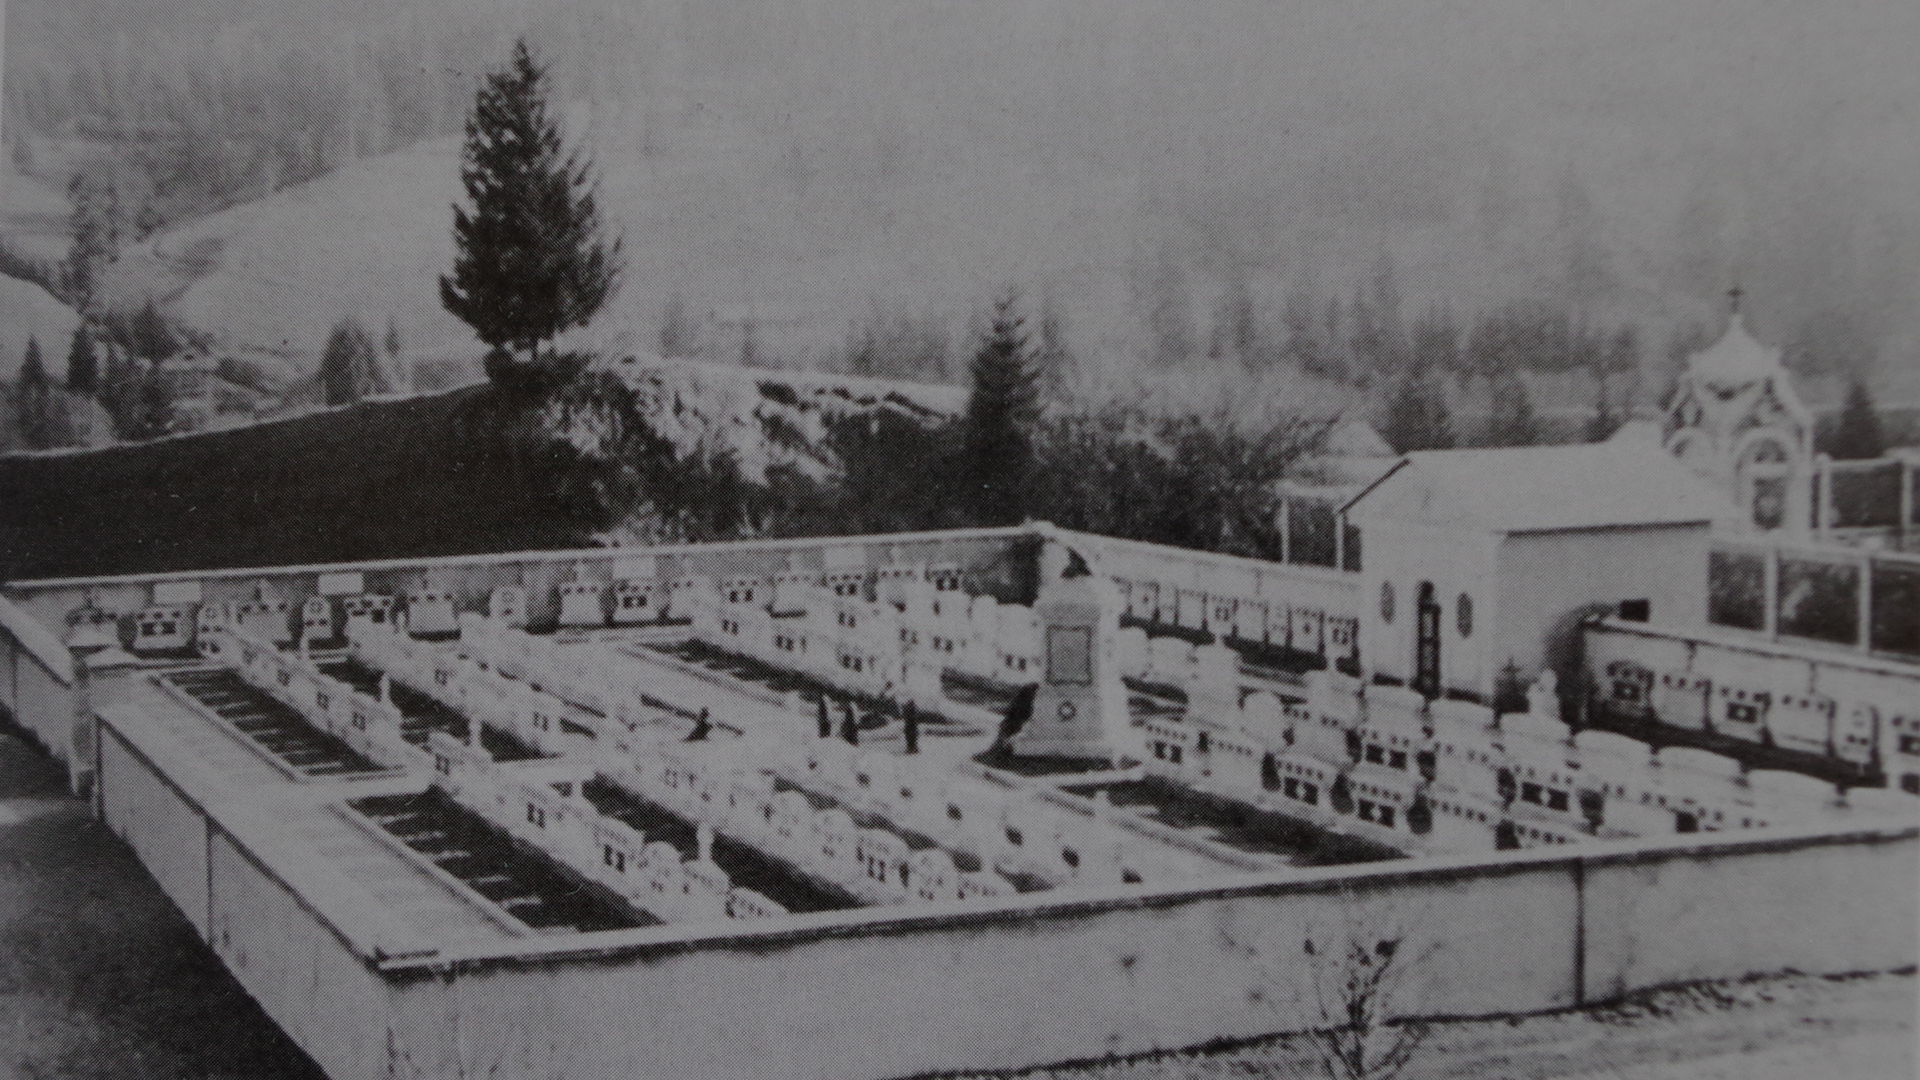 Cimitero Militare Monumentale “Adriano Lobetti Bodoni” (cimitero, monumentale) - Santo Stefano di Cadore (BL) 